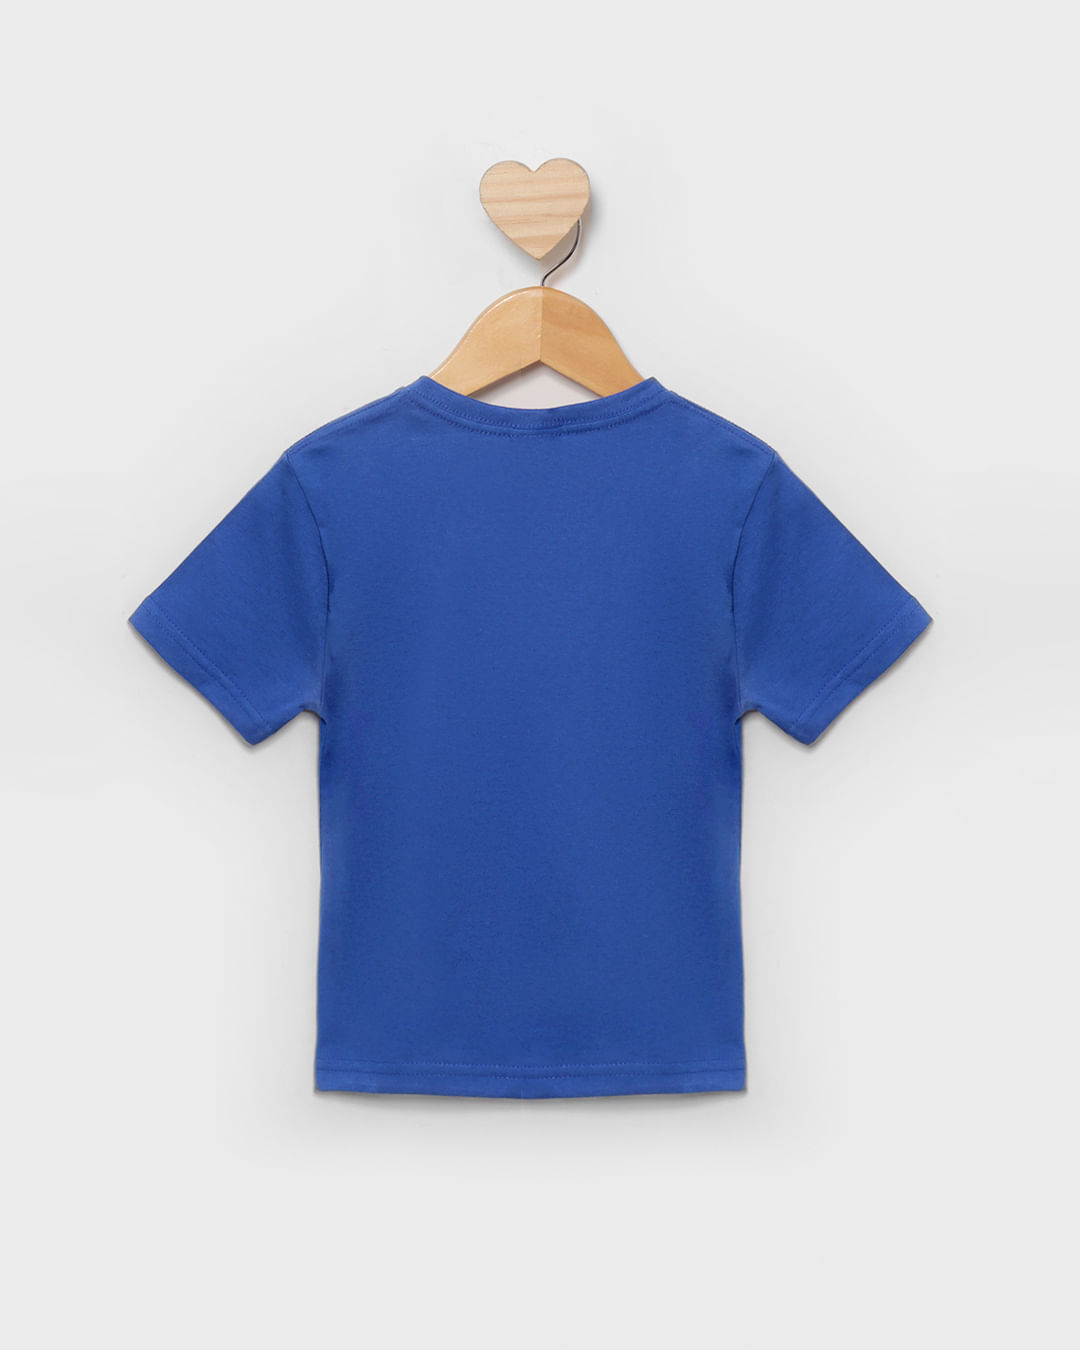 Camiseta-Mcch31918-M13-Spider---Azul-Medio